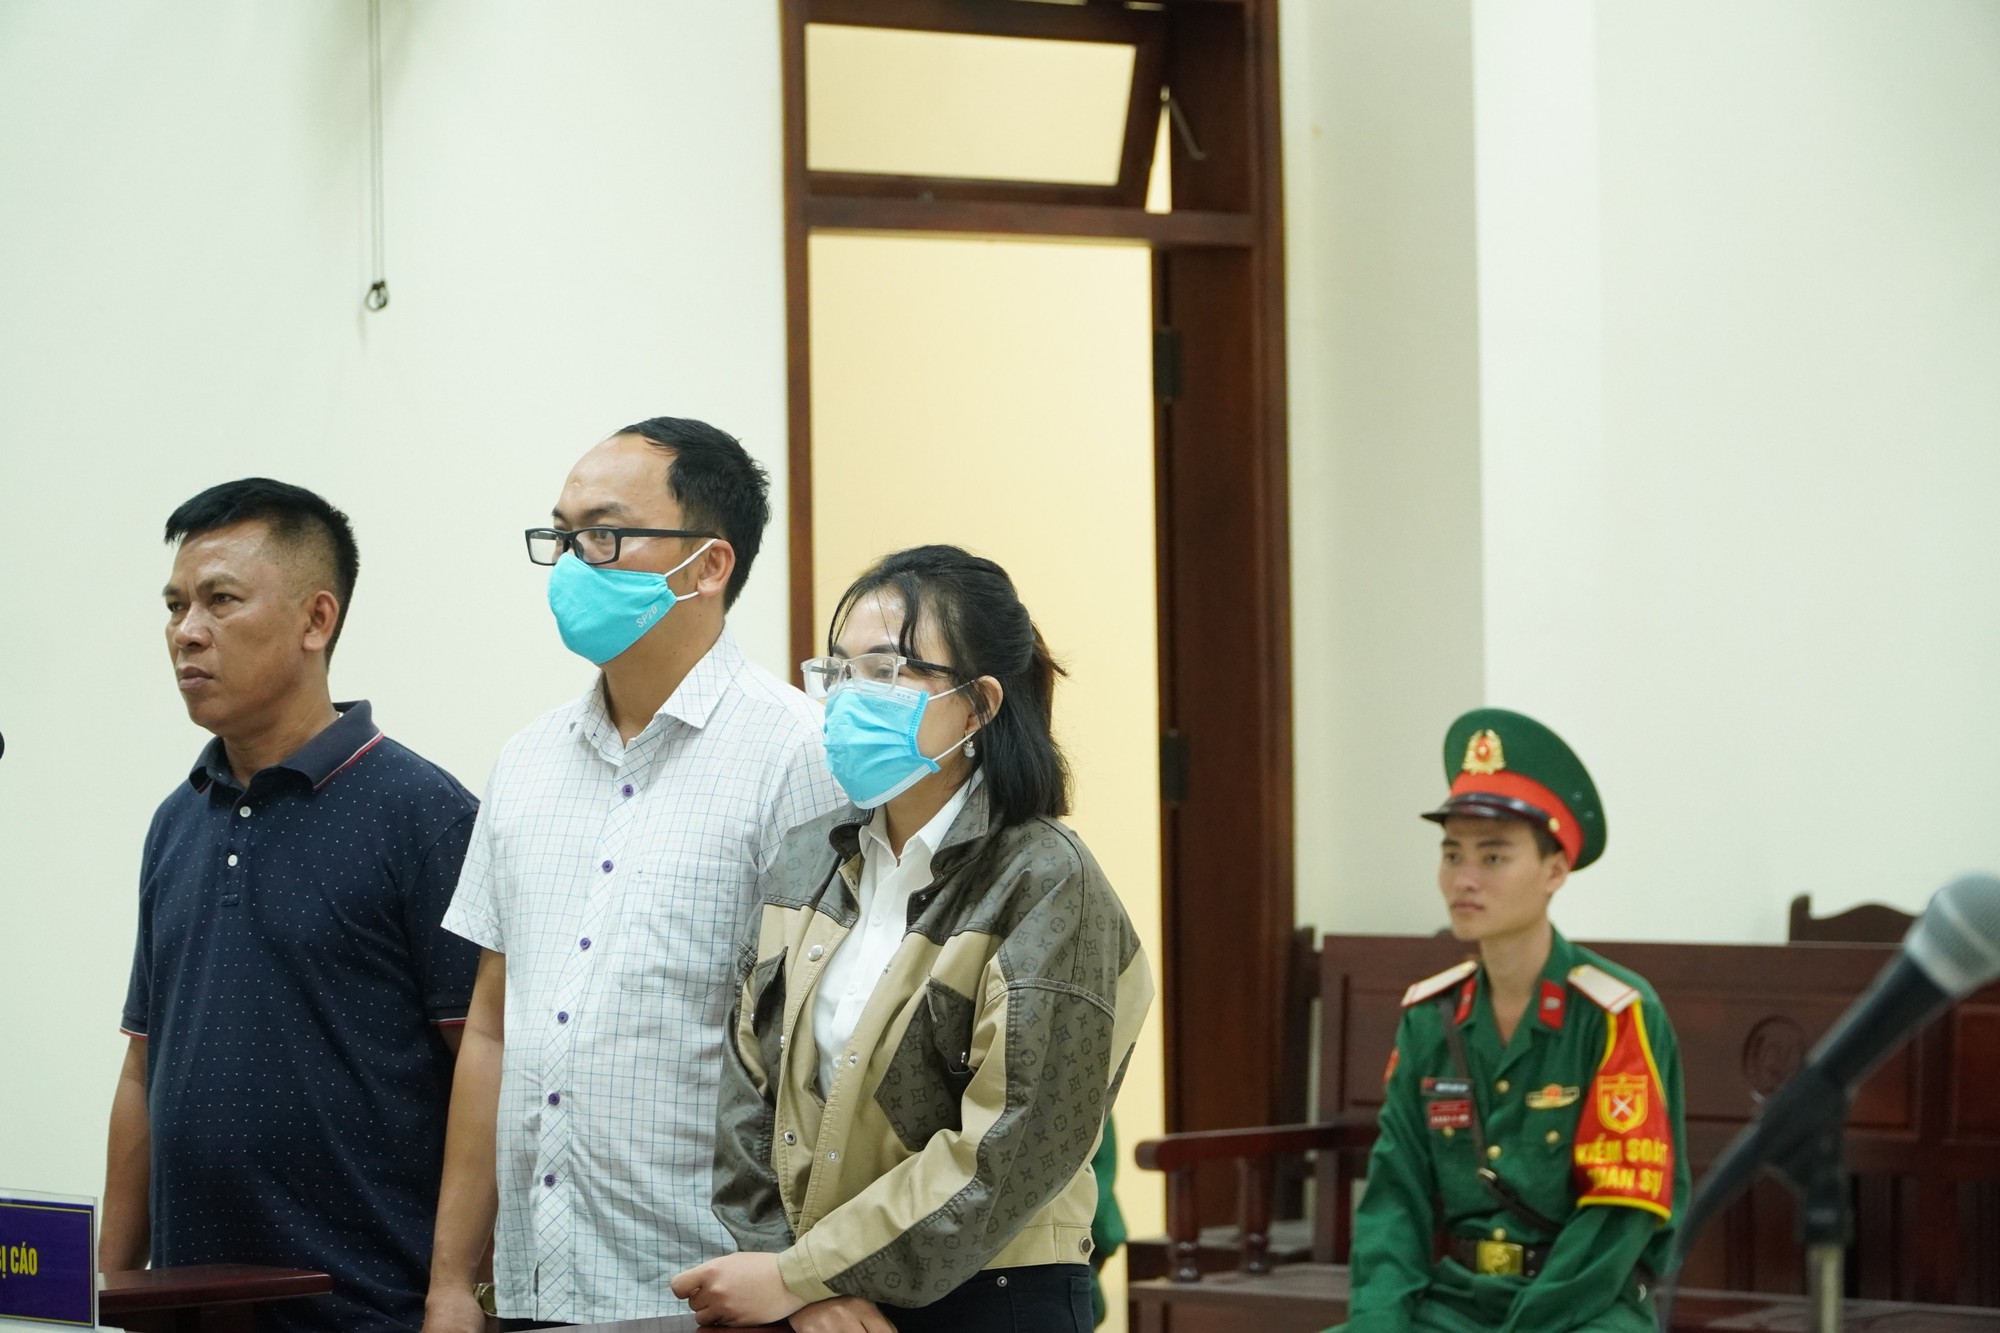 Đầu tháng 12 sẽ xét xử vụ cựu quân nhân tông chết nữ sinh lớp 12 ở Ninh Thuận - Ảnh 1.